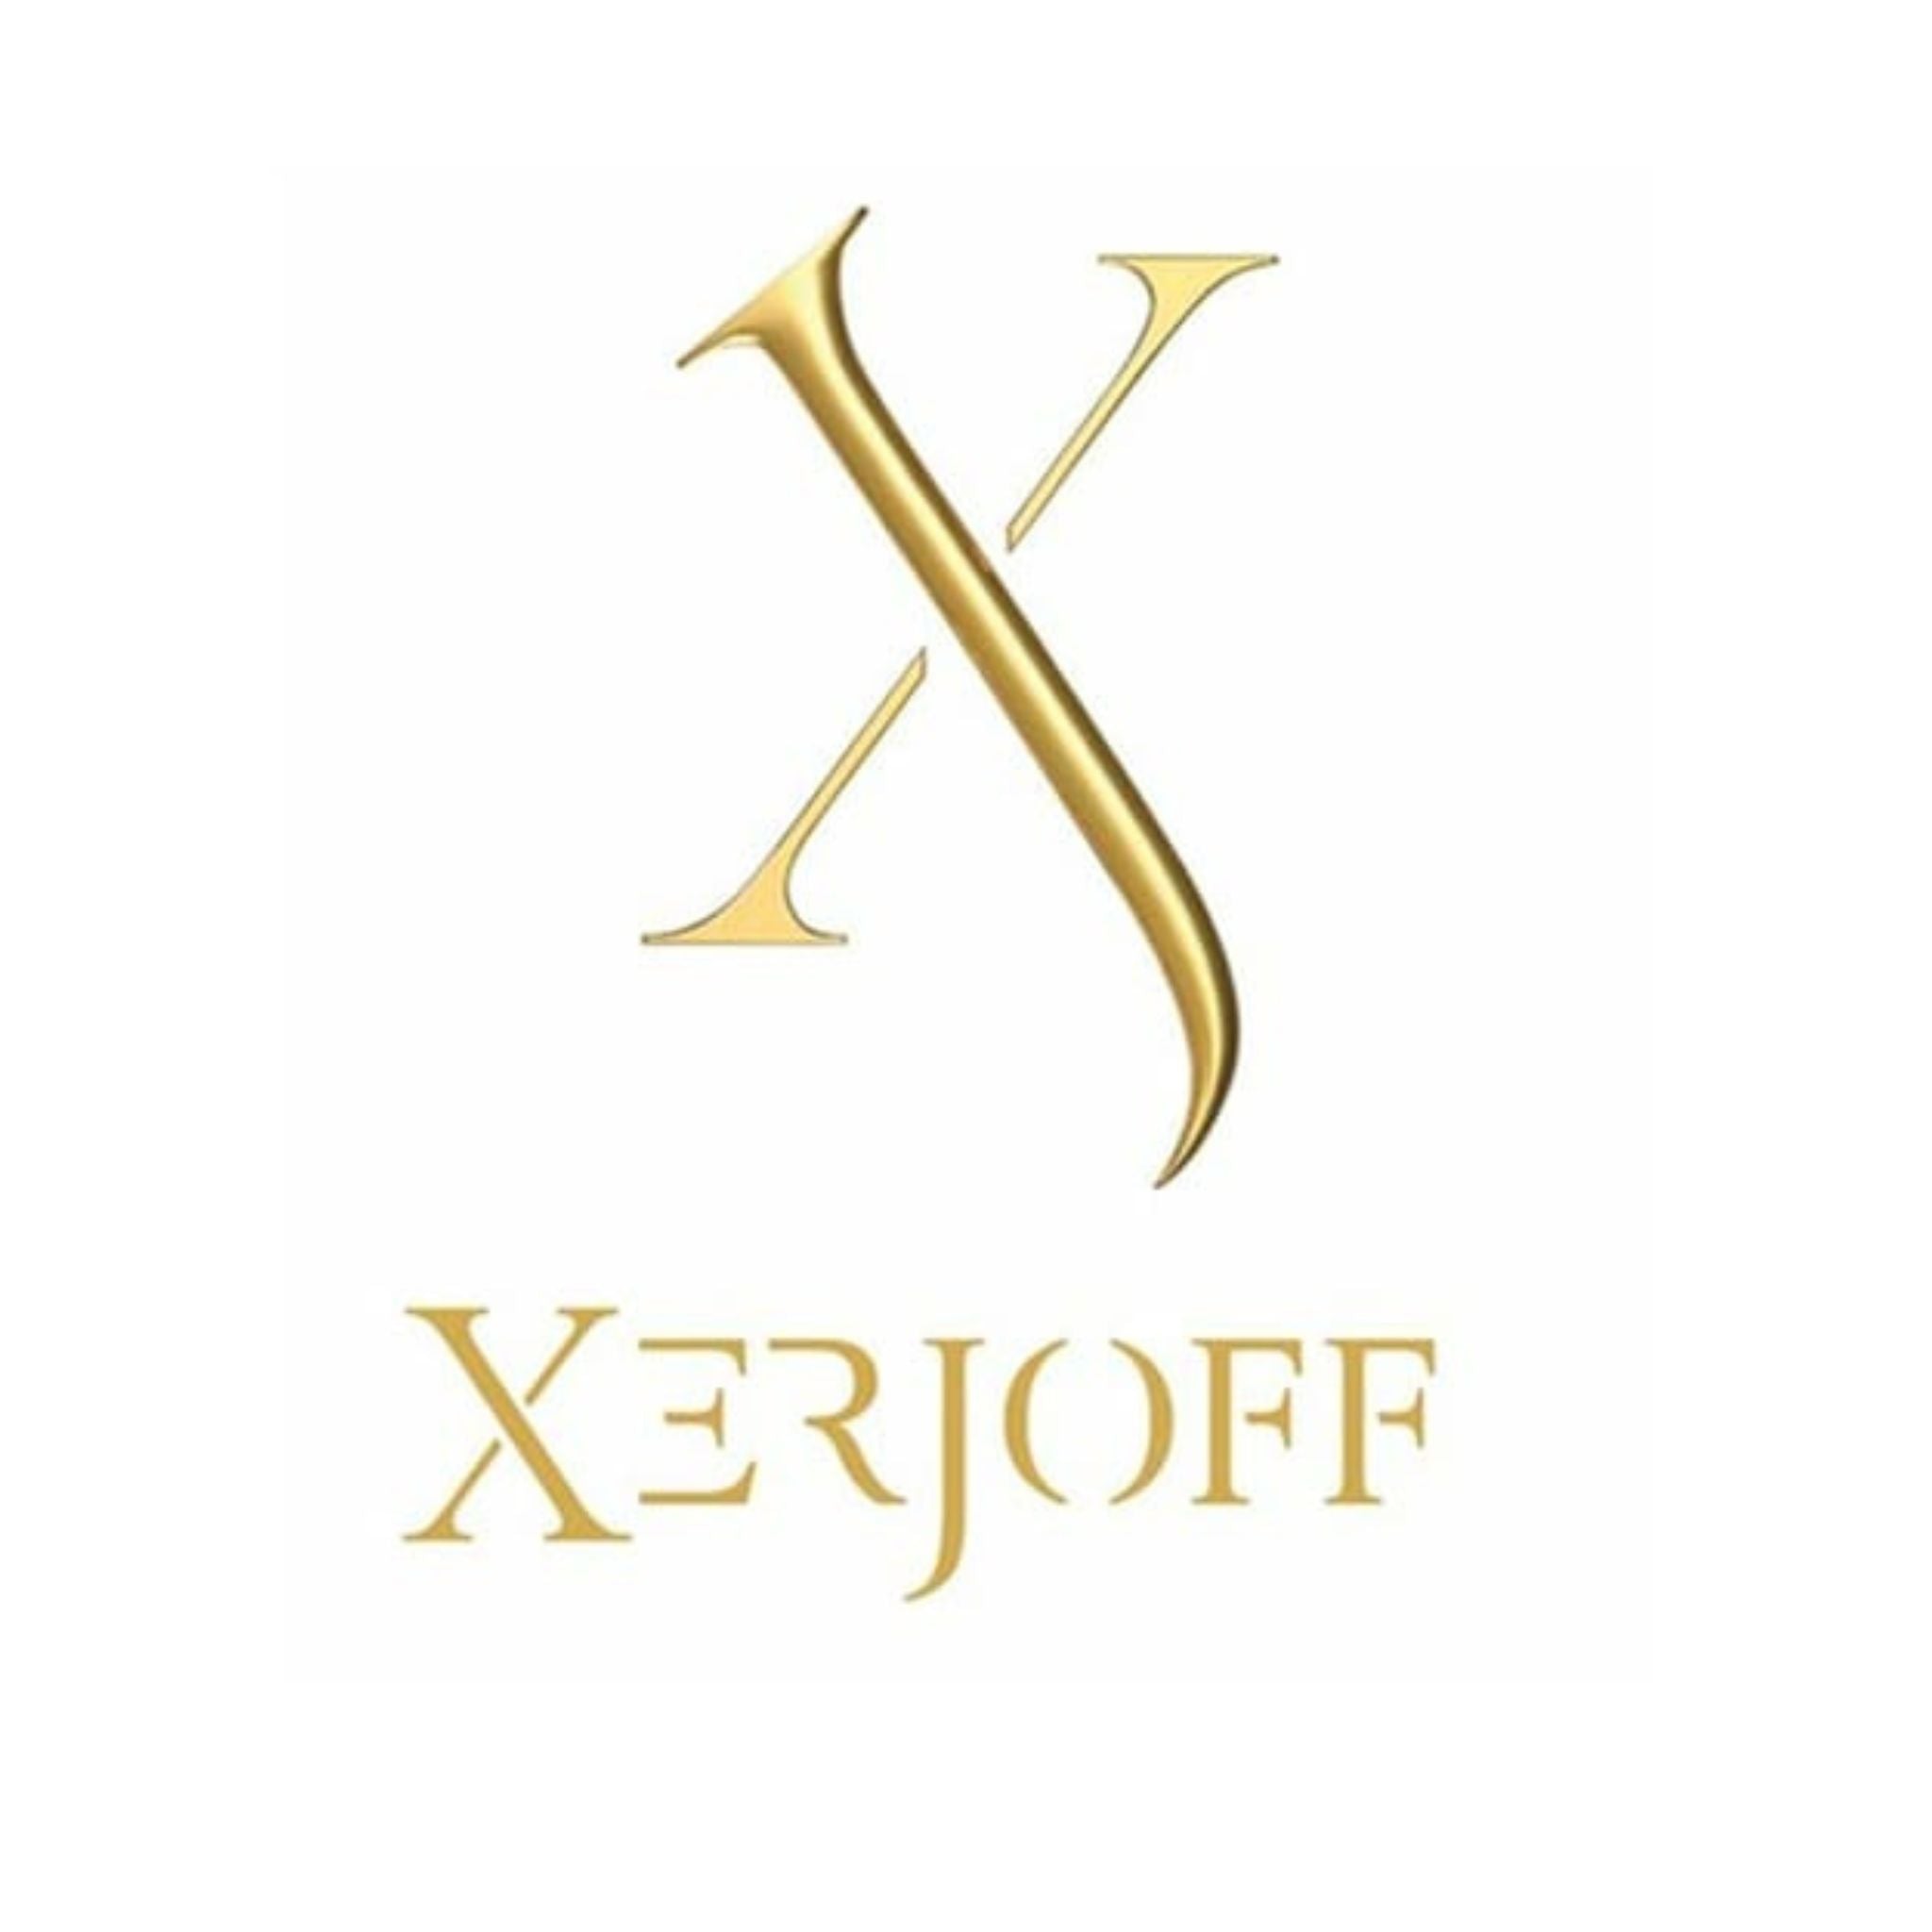 Xerjoff logo